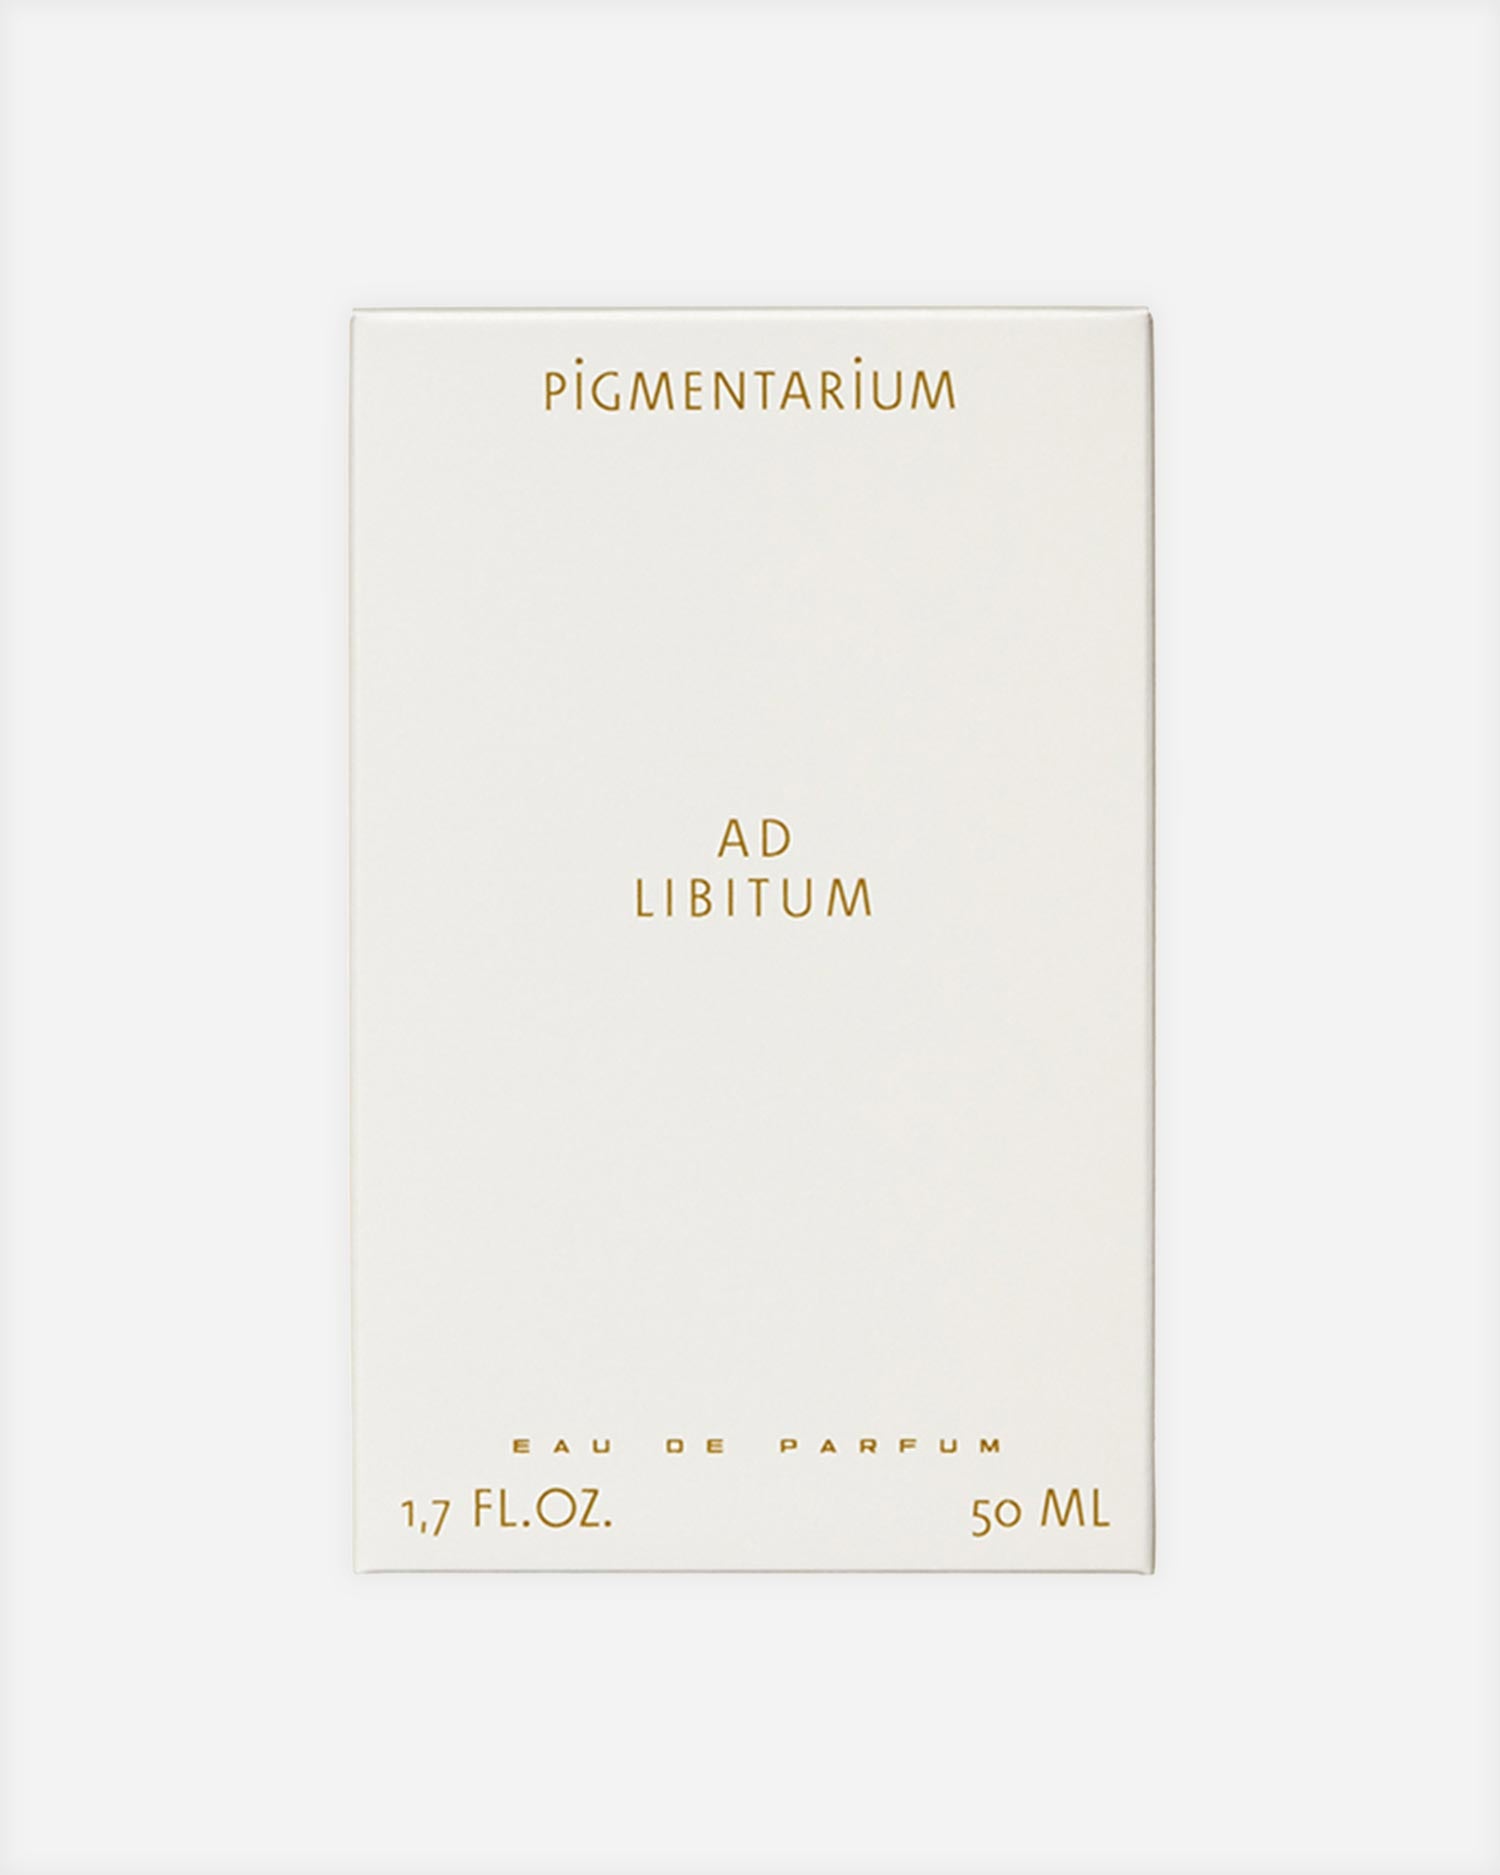 AD Libitum Perfume - Fragrance - Pigmentarium - Elevastor